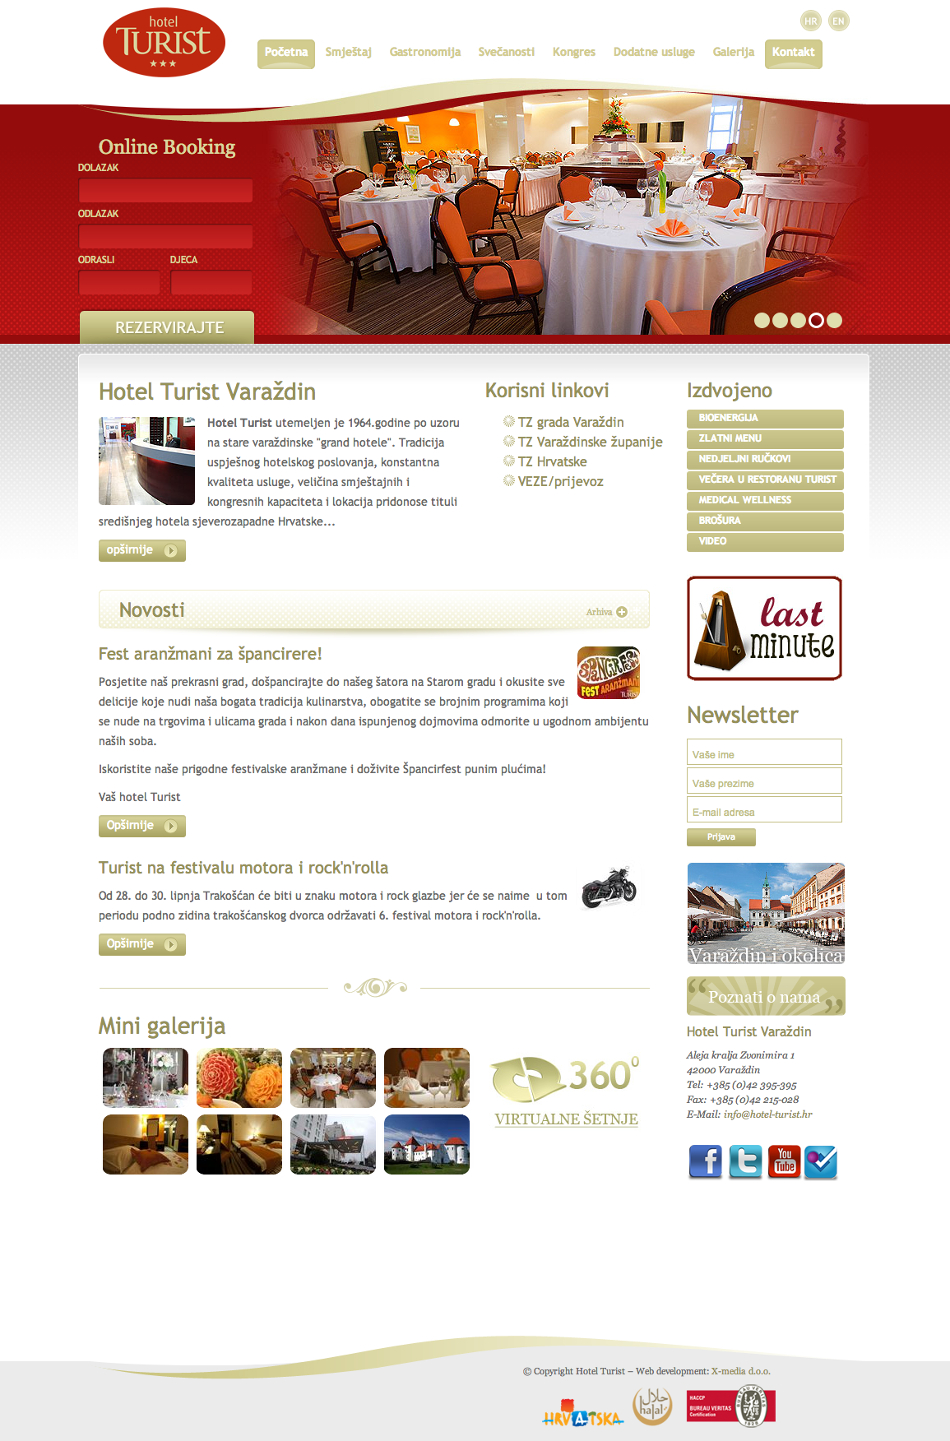 Hotel Turist - stara web stranica